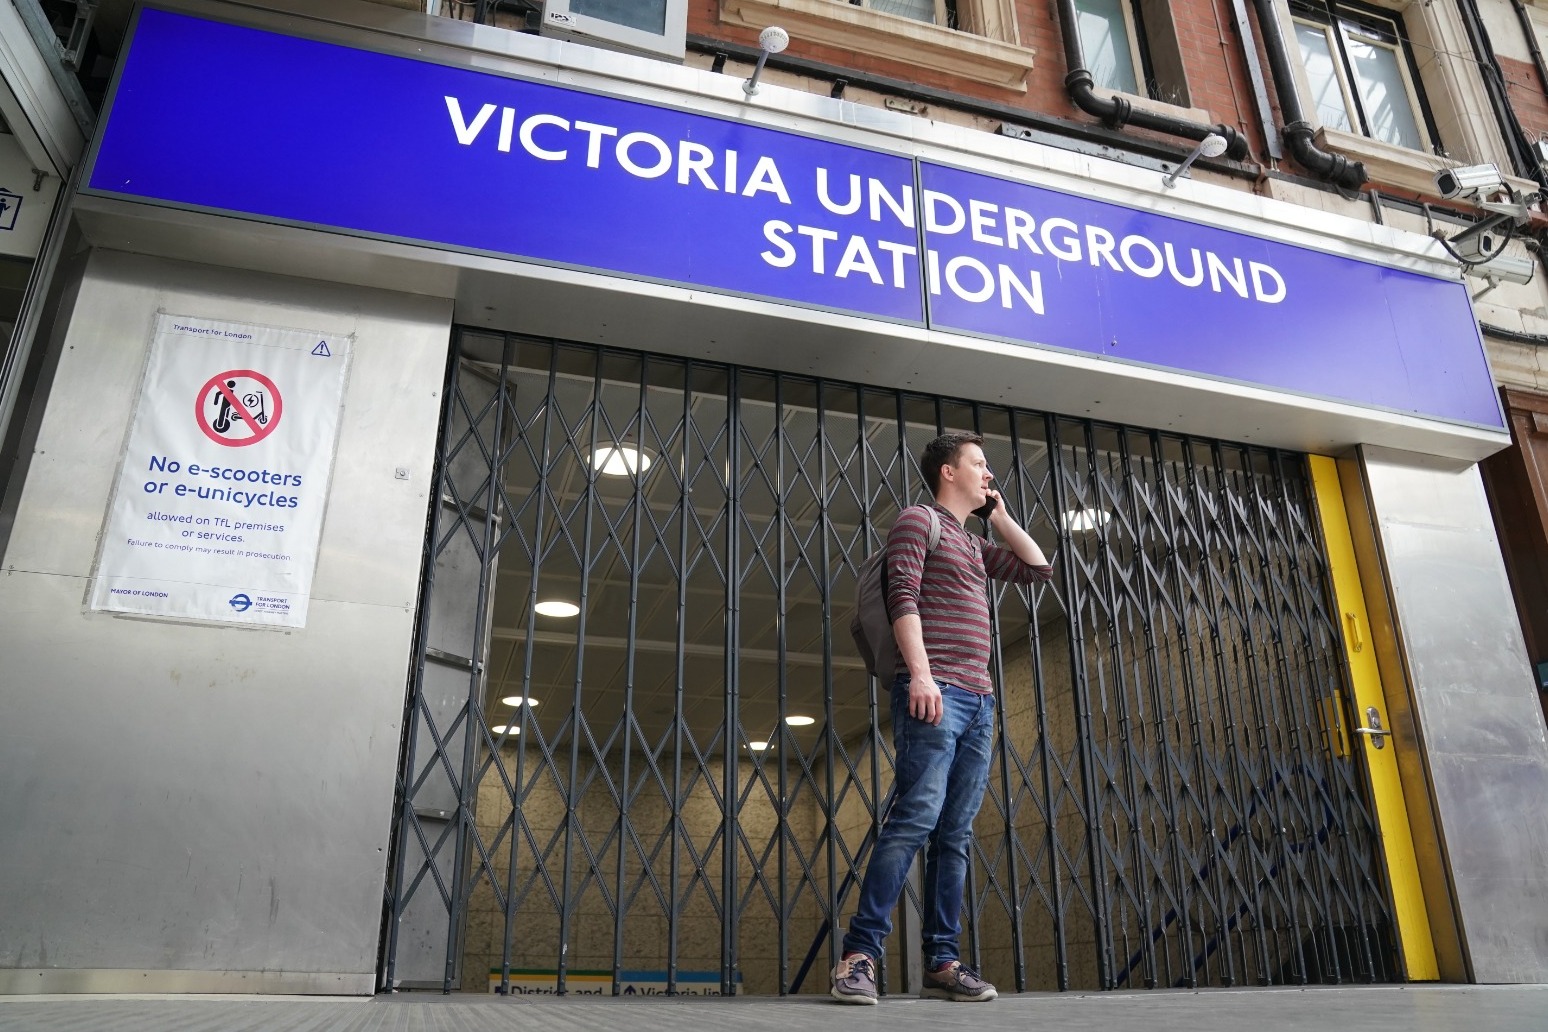 Tube strike causing travel misery across London 